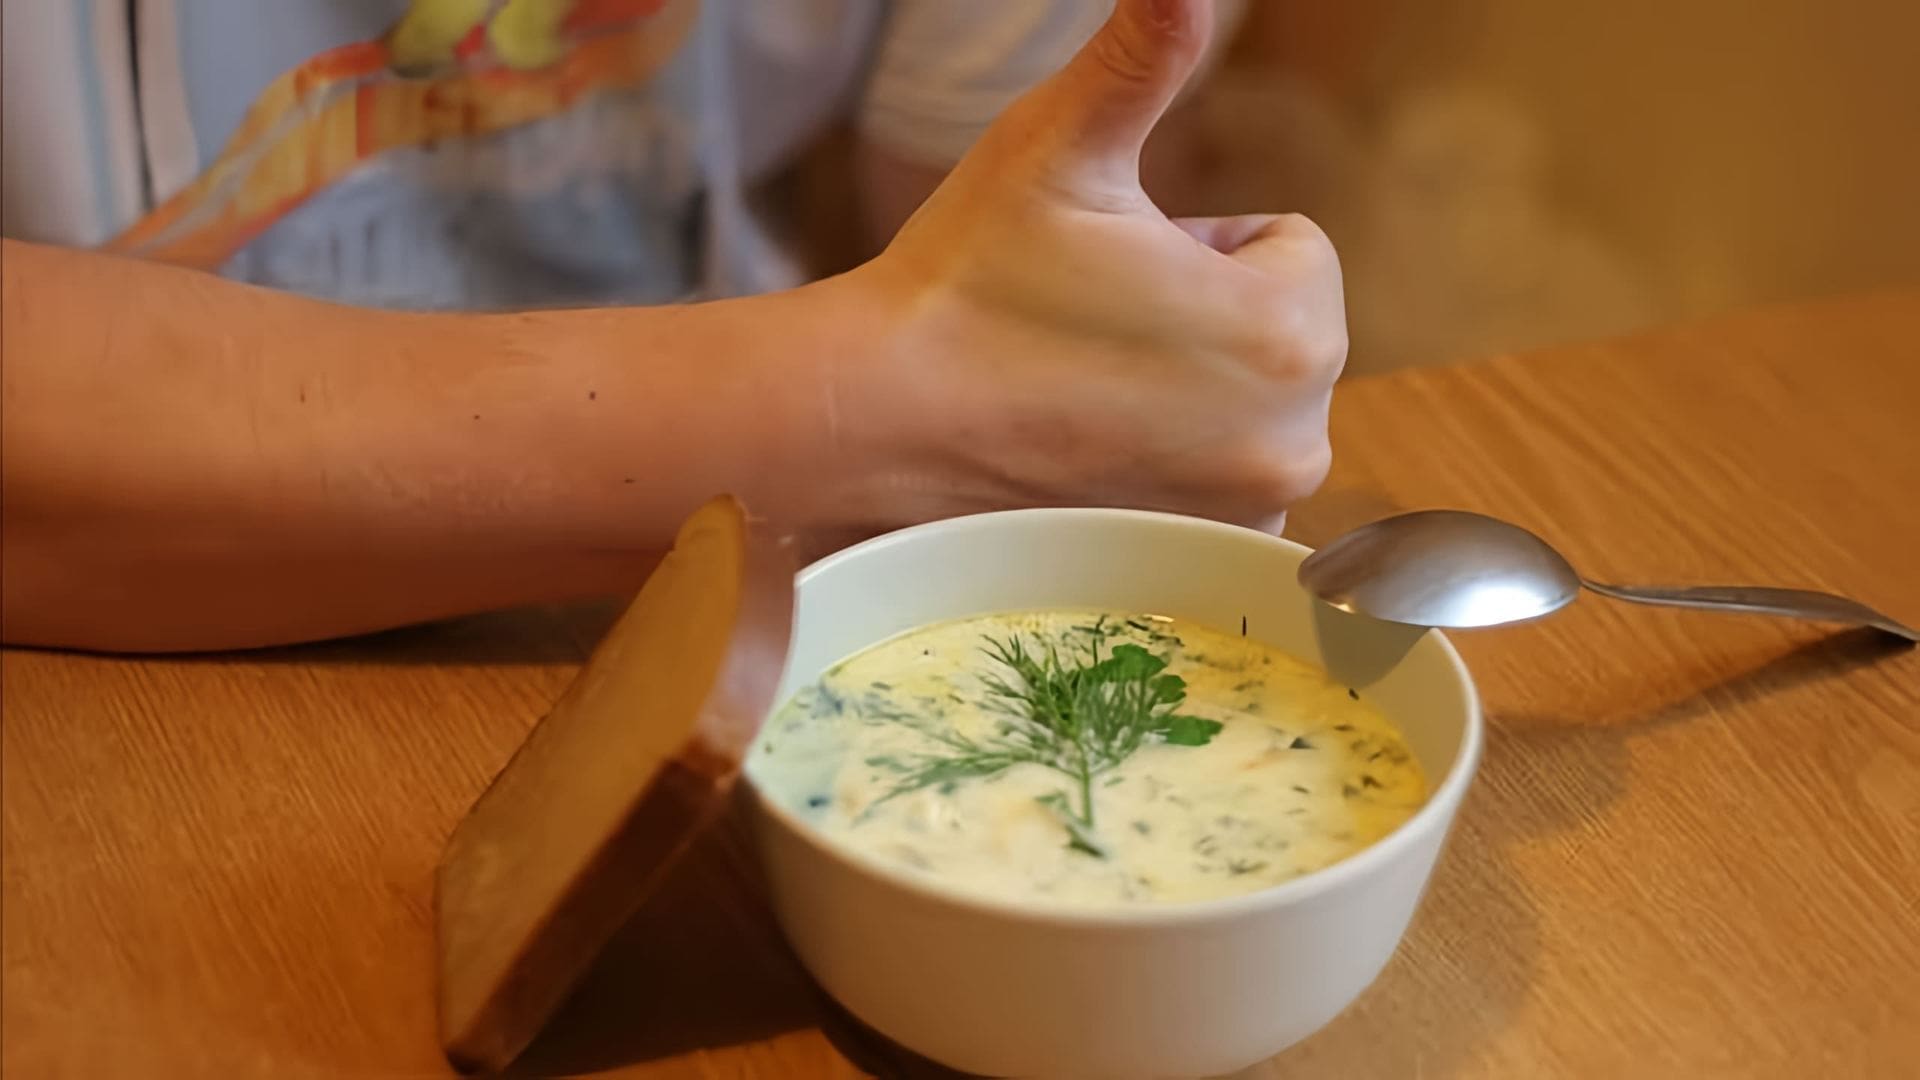 Рецепт сырного супа - это видео-ролик, который показывает, как приготовить вкусный и питательный сырный суп